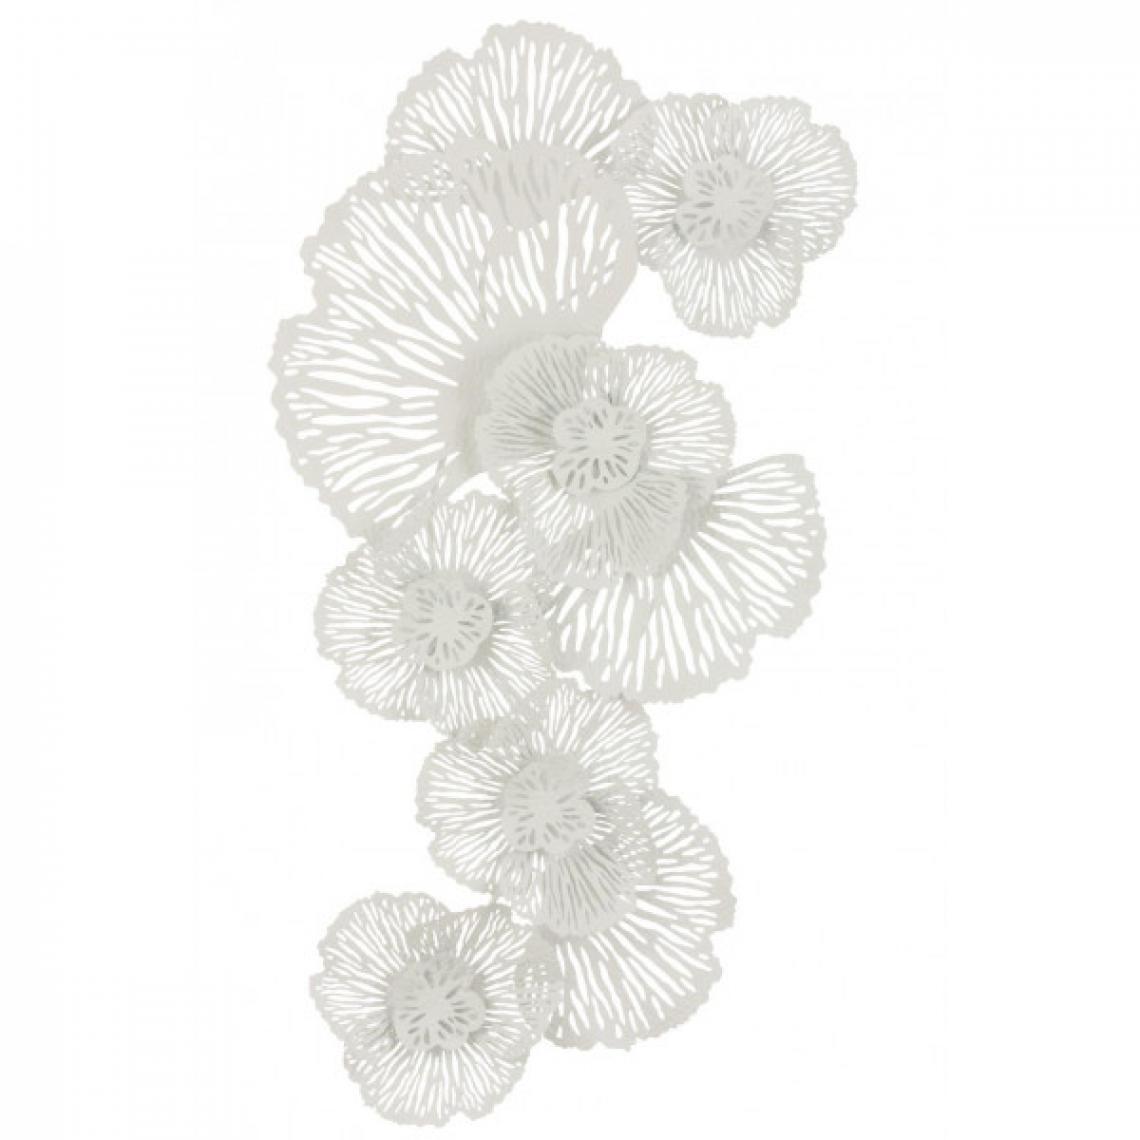 Dansmamaison - Decoration Murale Fleurs Trous Metal Blanc - L 130 x l 72 x H 10 cm - Objets déco